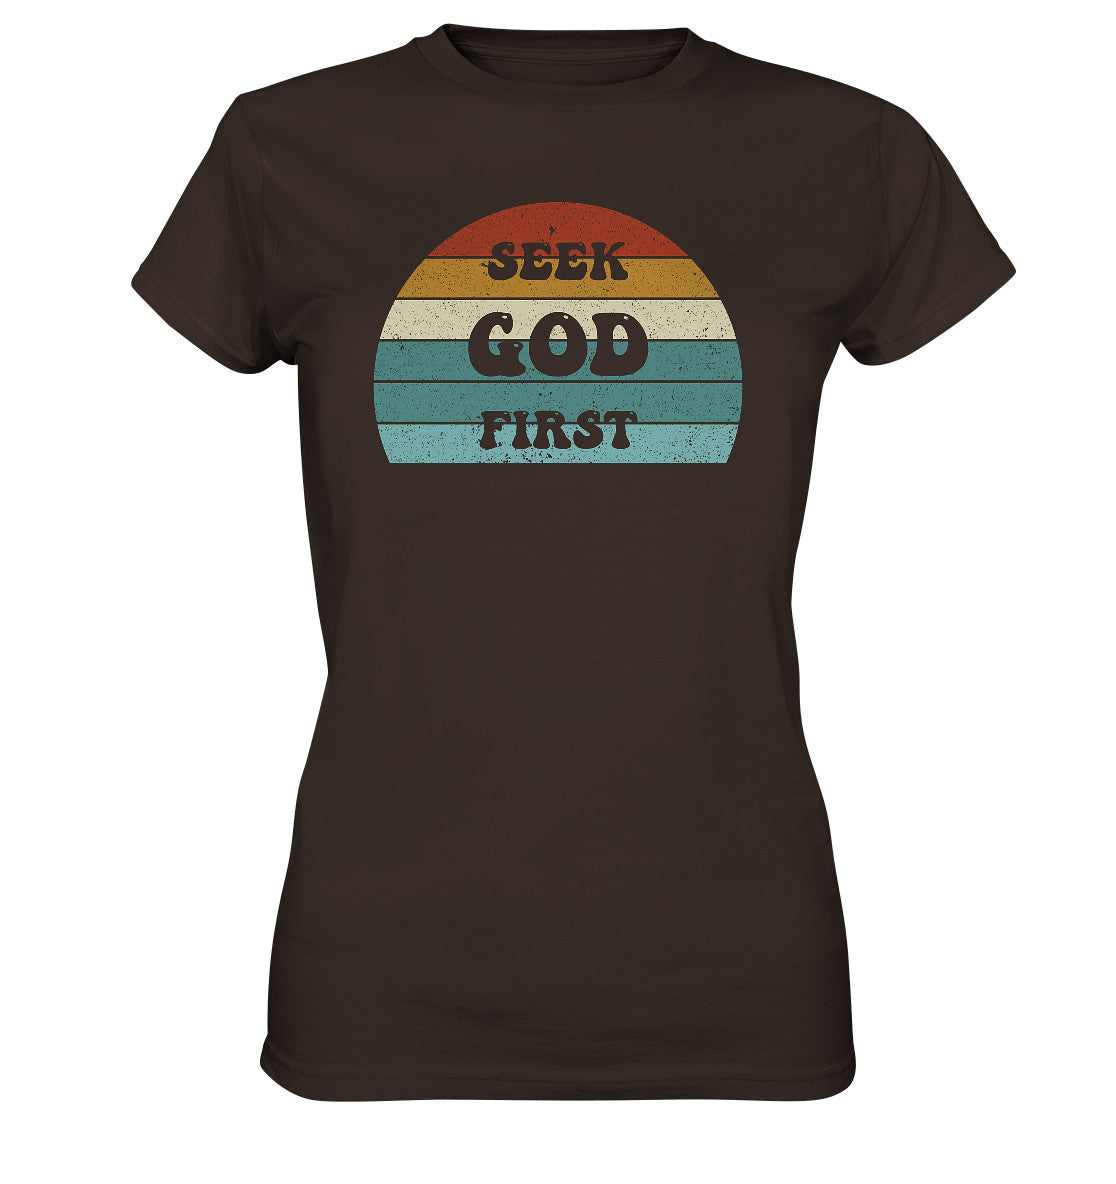 Mt 6,33 - Seek God First - Ladies Premium Shirt